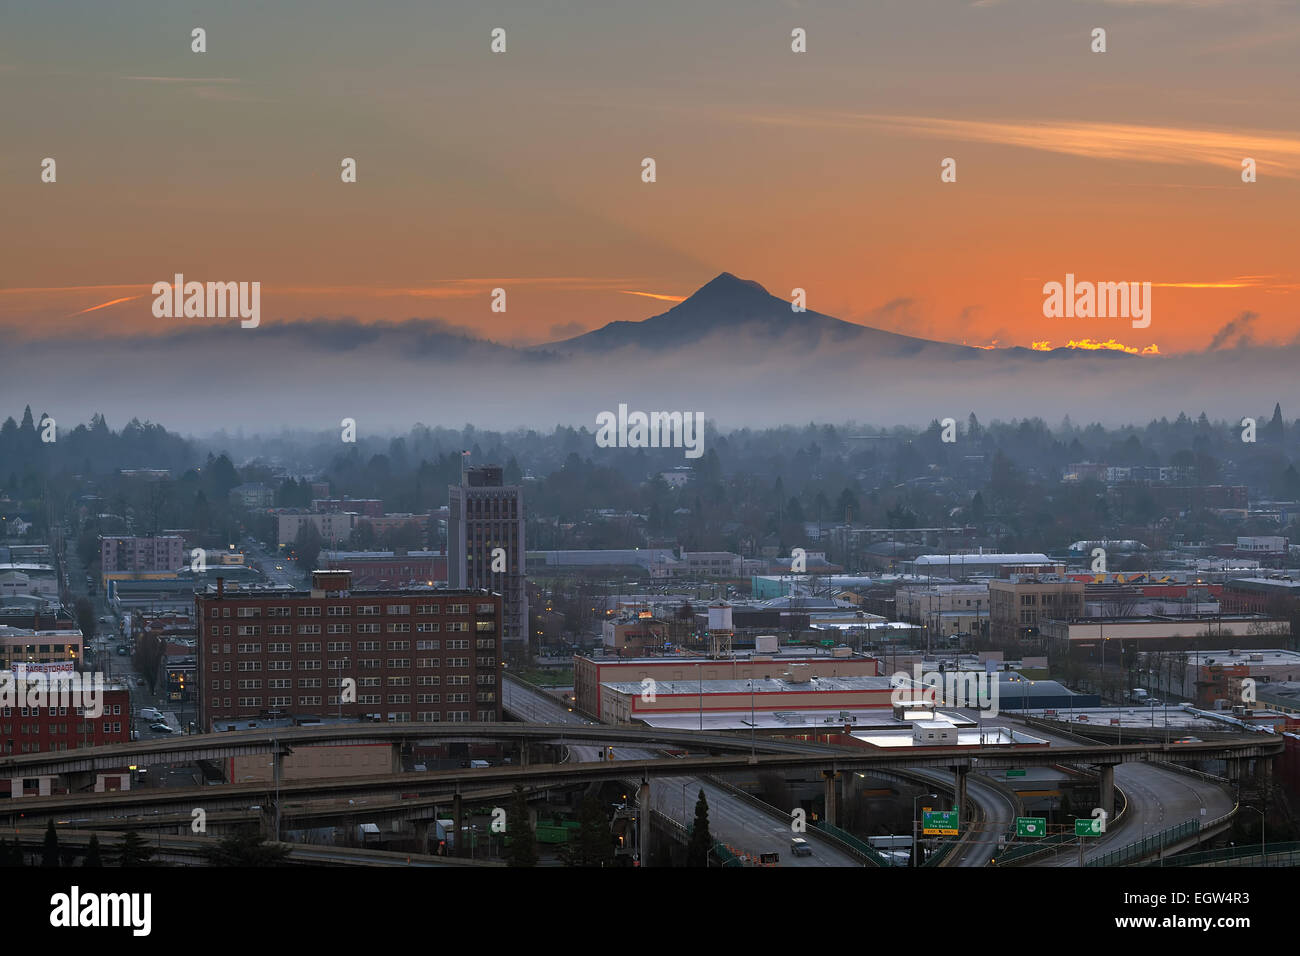 Le centre-ville de l'Oregon Portland cityscape eastside zone industrielle avec Mount Hood au lever du soleil Banque D'Images